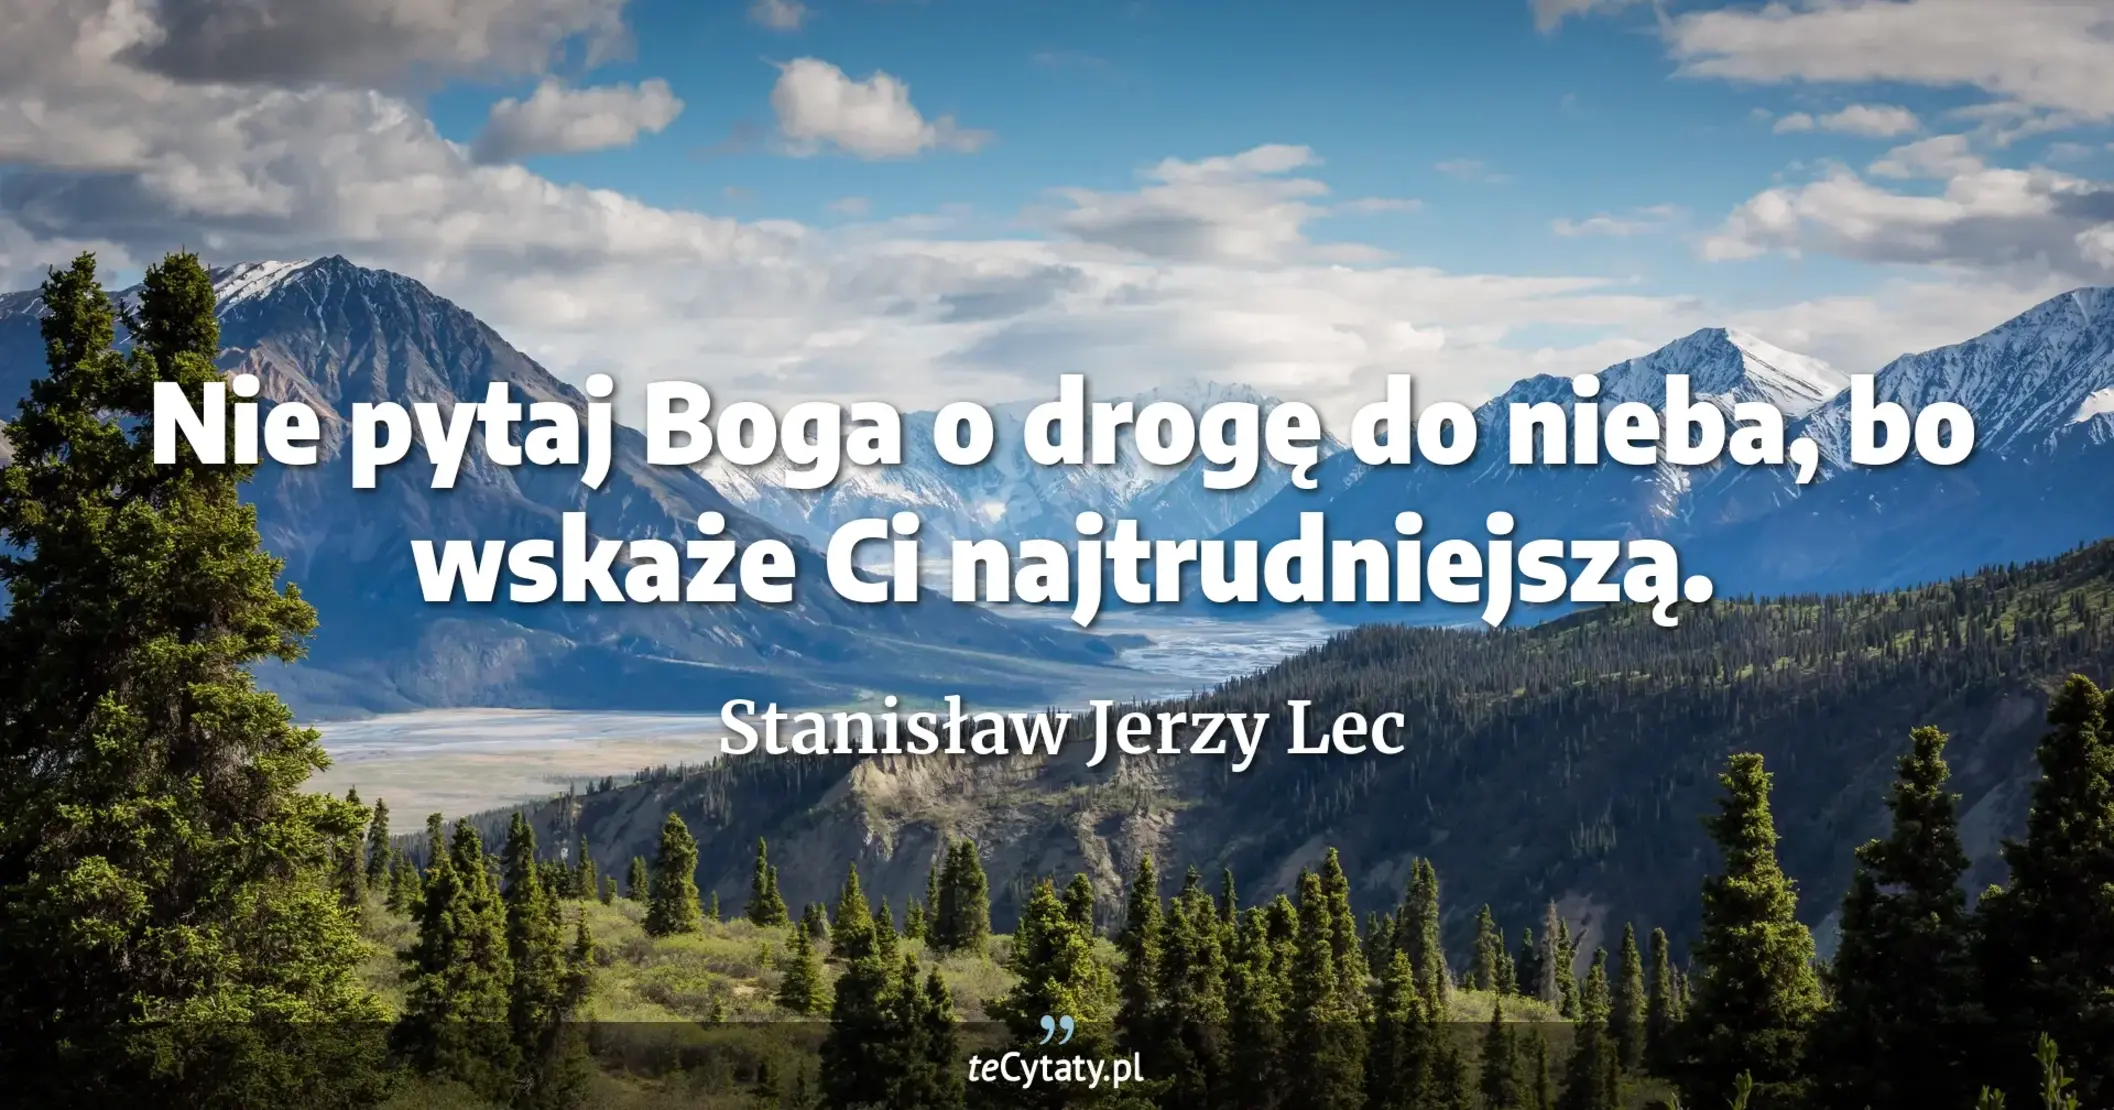 Nie pytaj Boga o drogę do nieba, bo wskaże Ci najtrudniejszą. - Stanisław Jerzy Lec